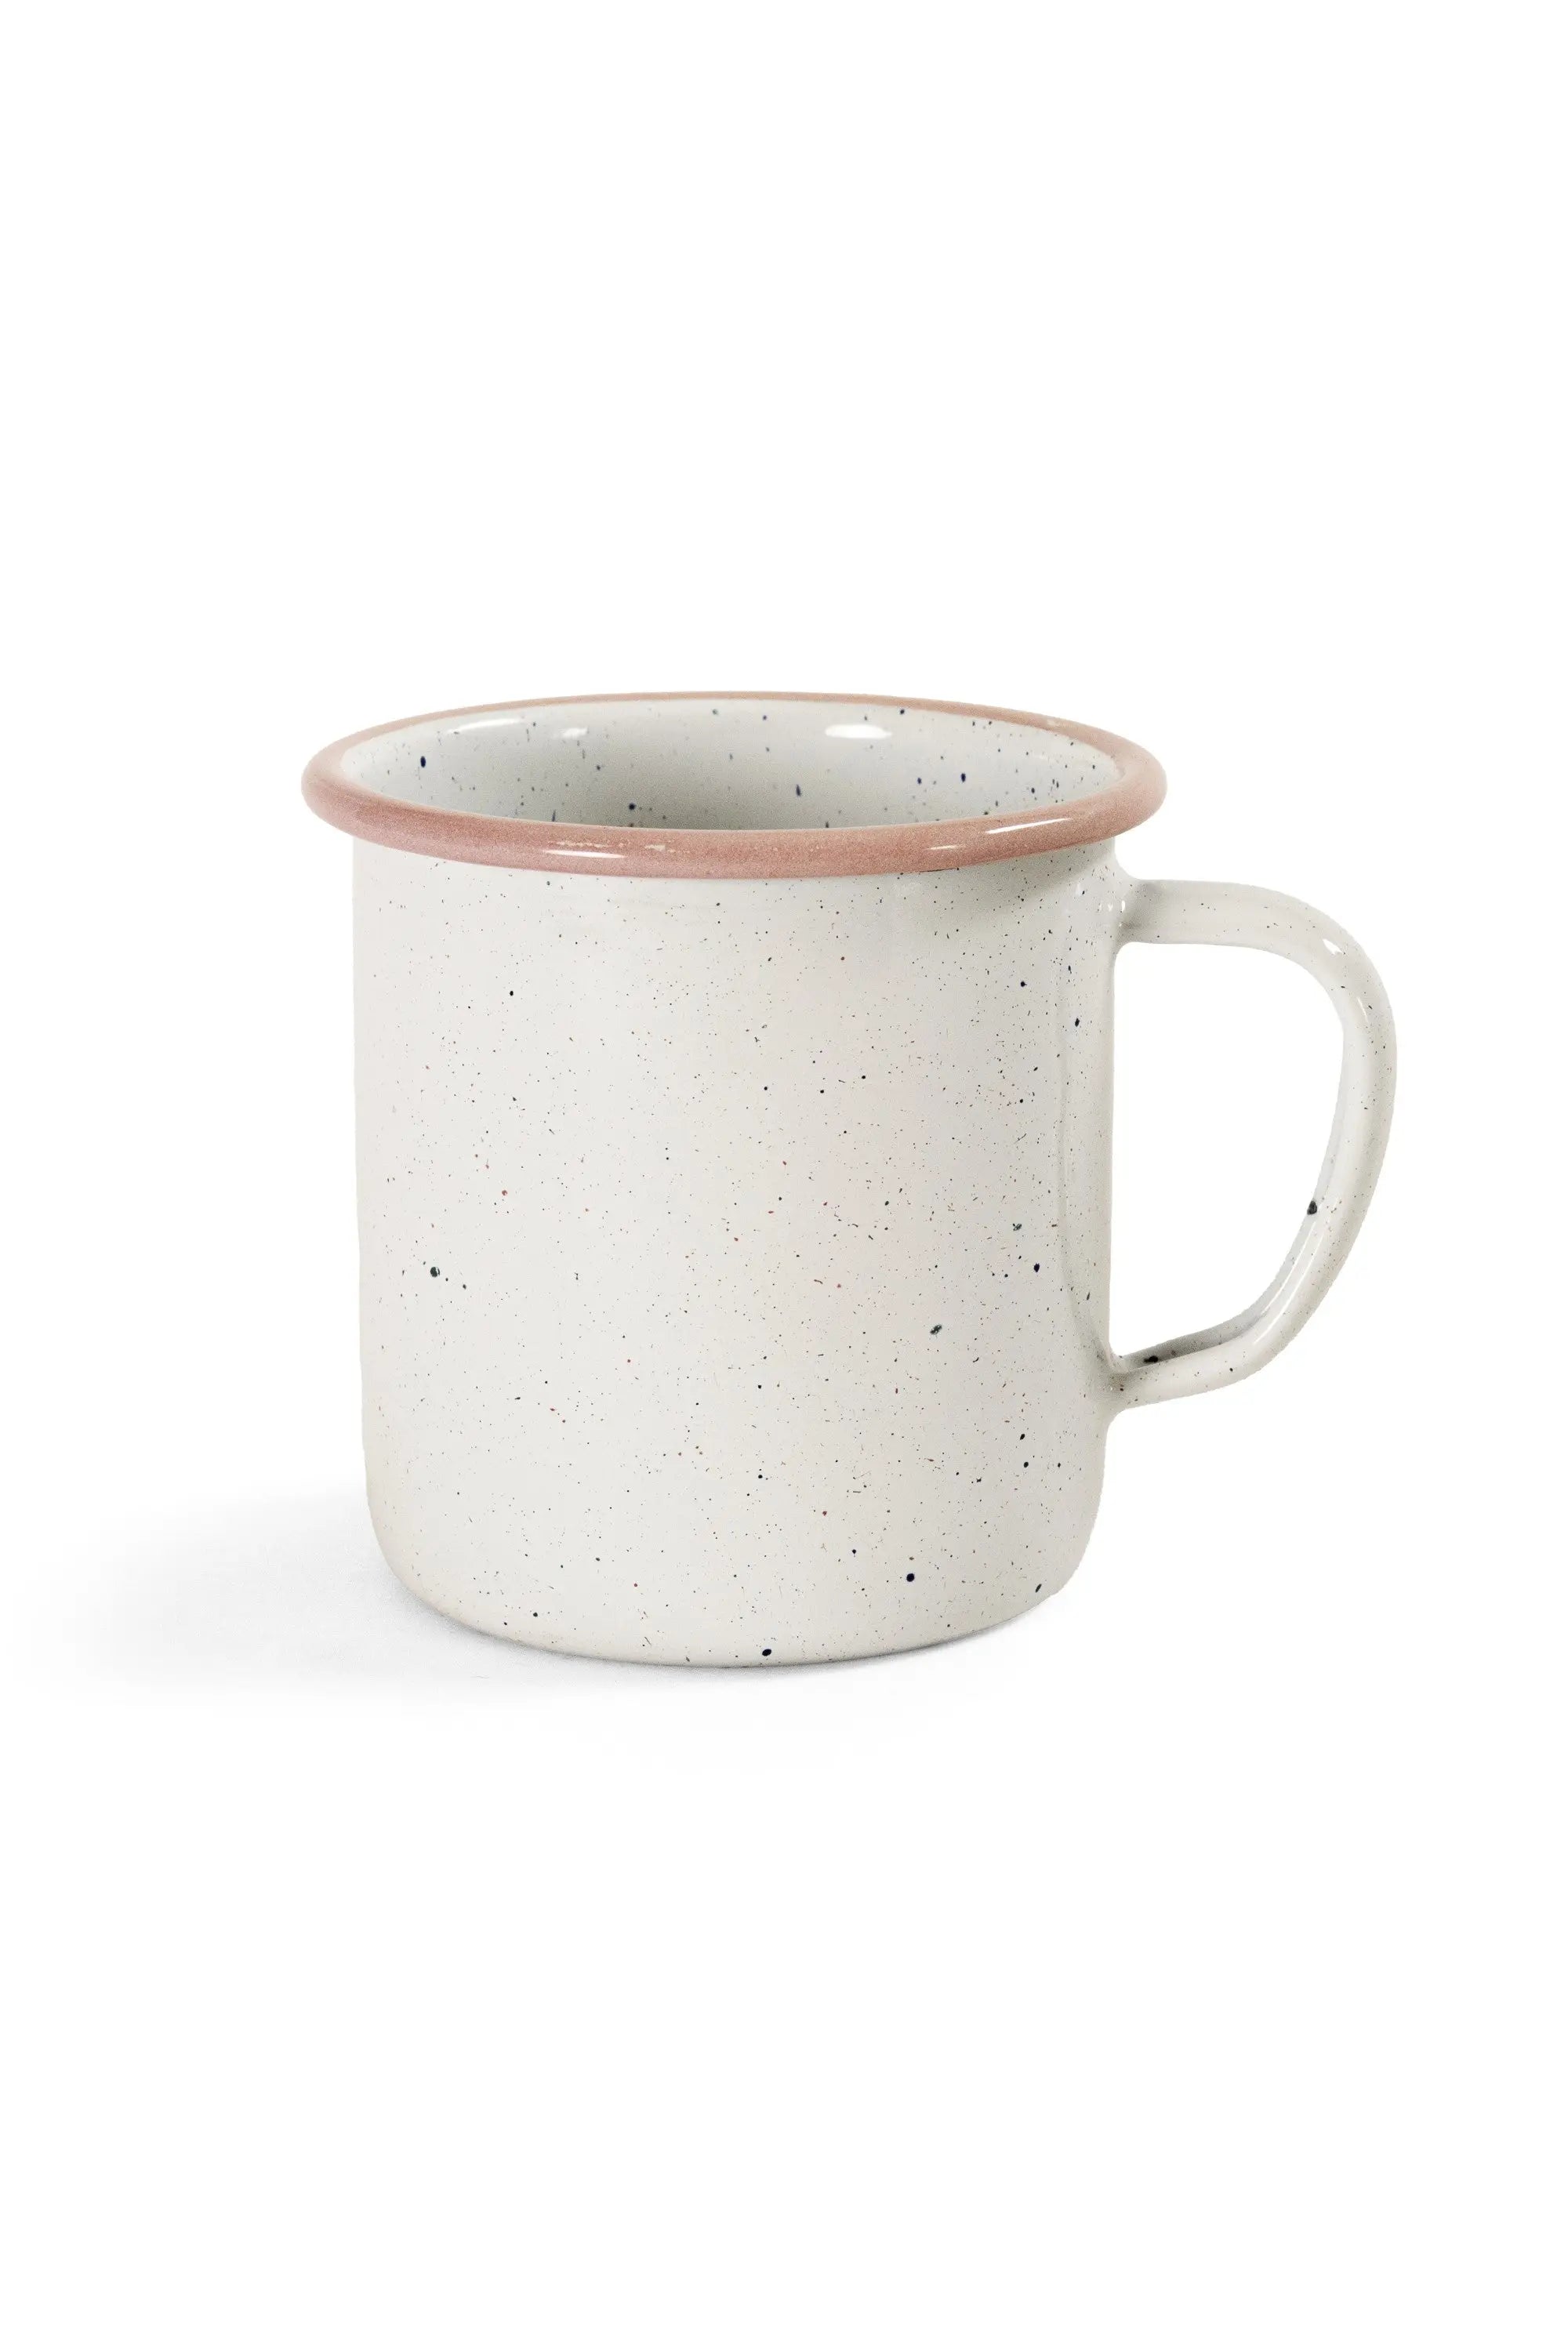 Blush speckled enamel coffee mug